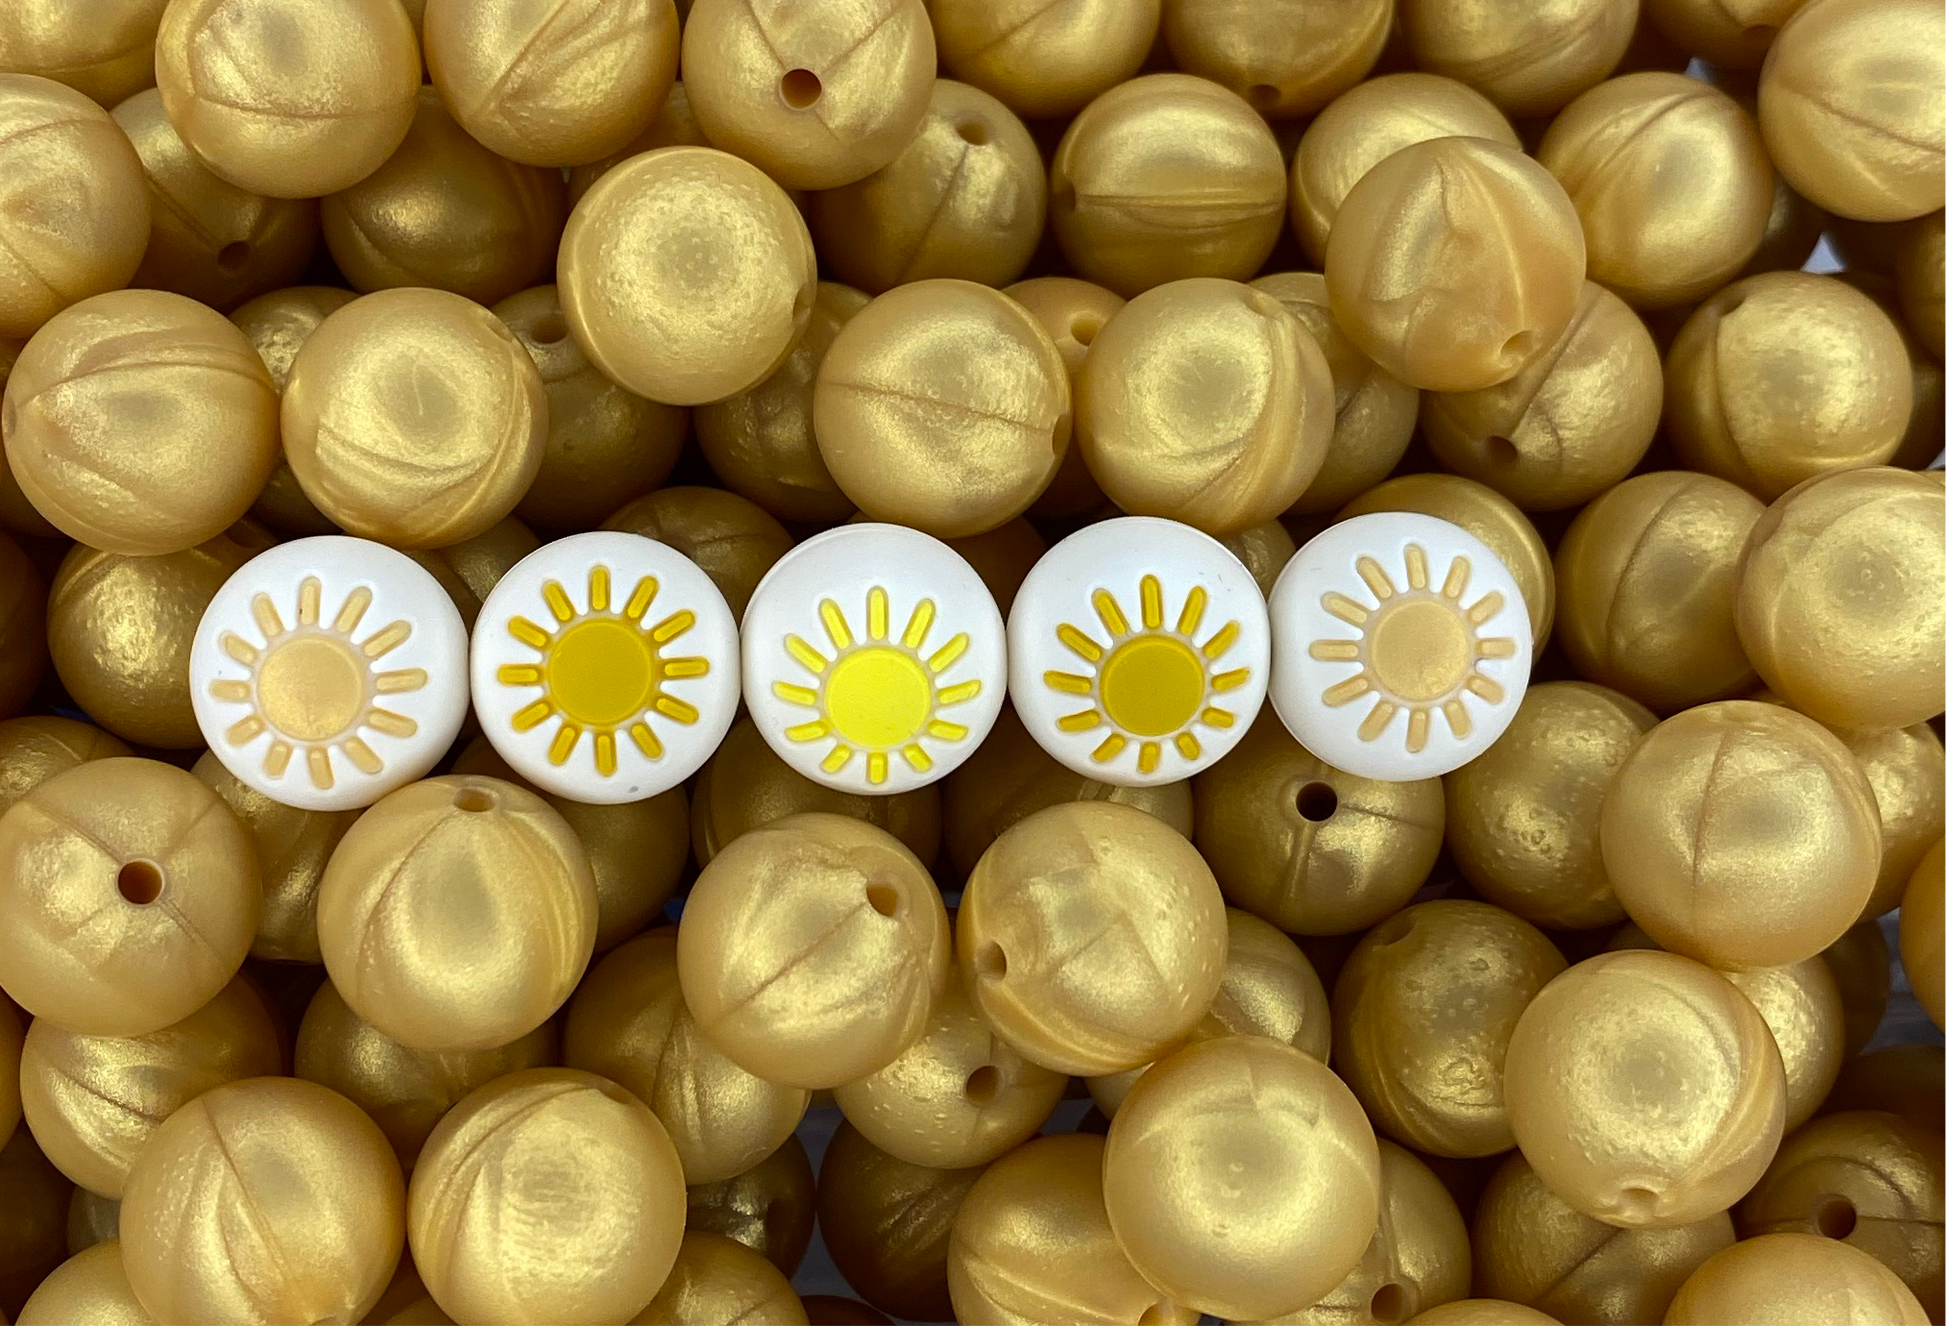 15mm Sunshine Yellow Round Silicone Beads, Yellow Round Silicone Beads,  Beads Wholesale